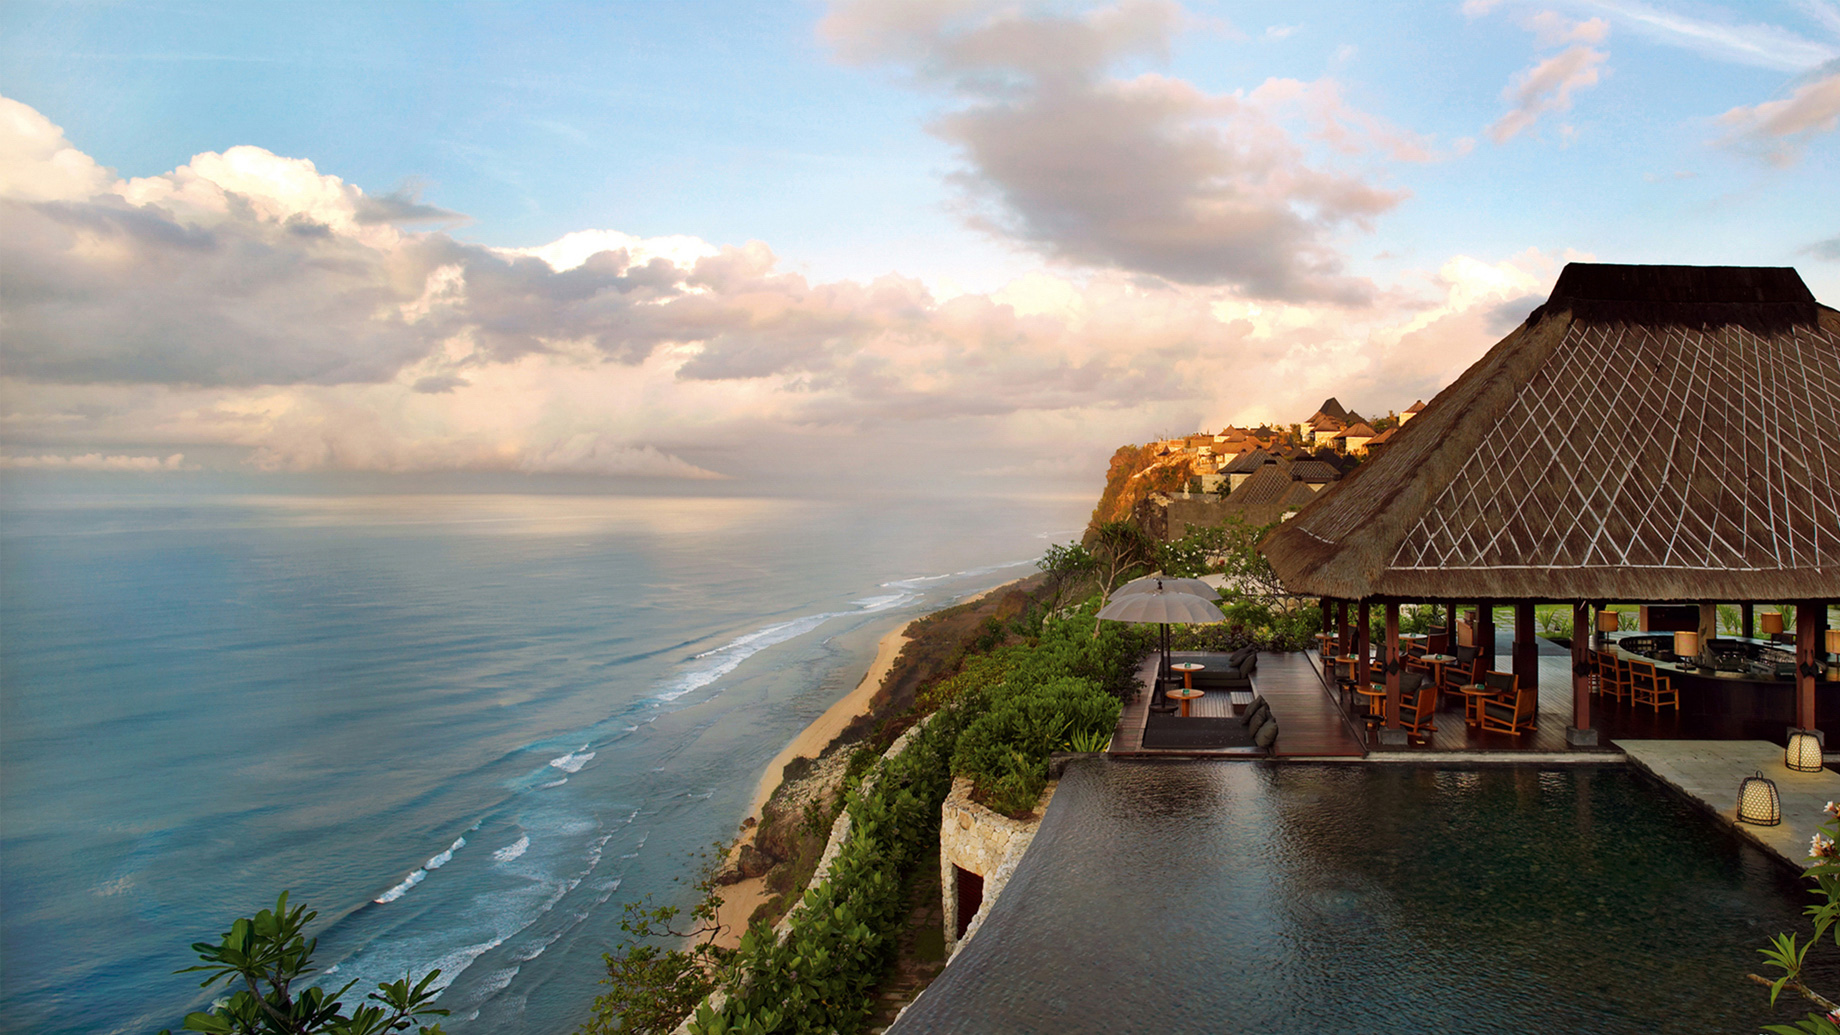 Bvlgari Luxury Resort Bali - Uluwatu, Bali, Indonesia